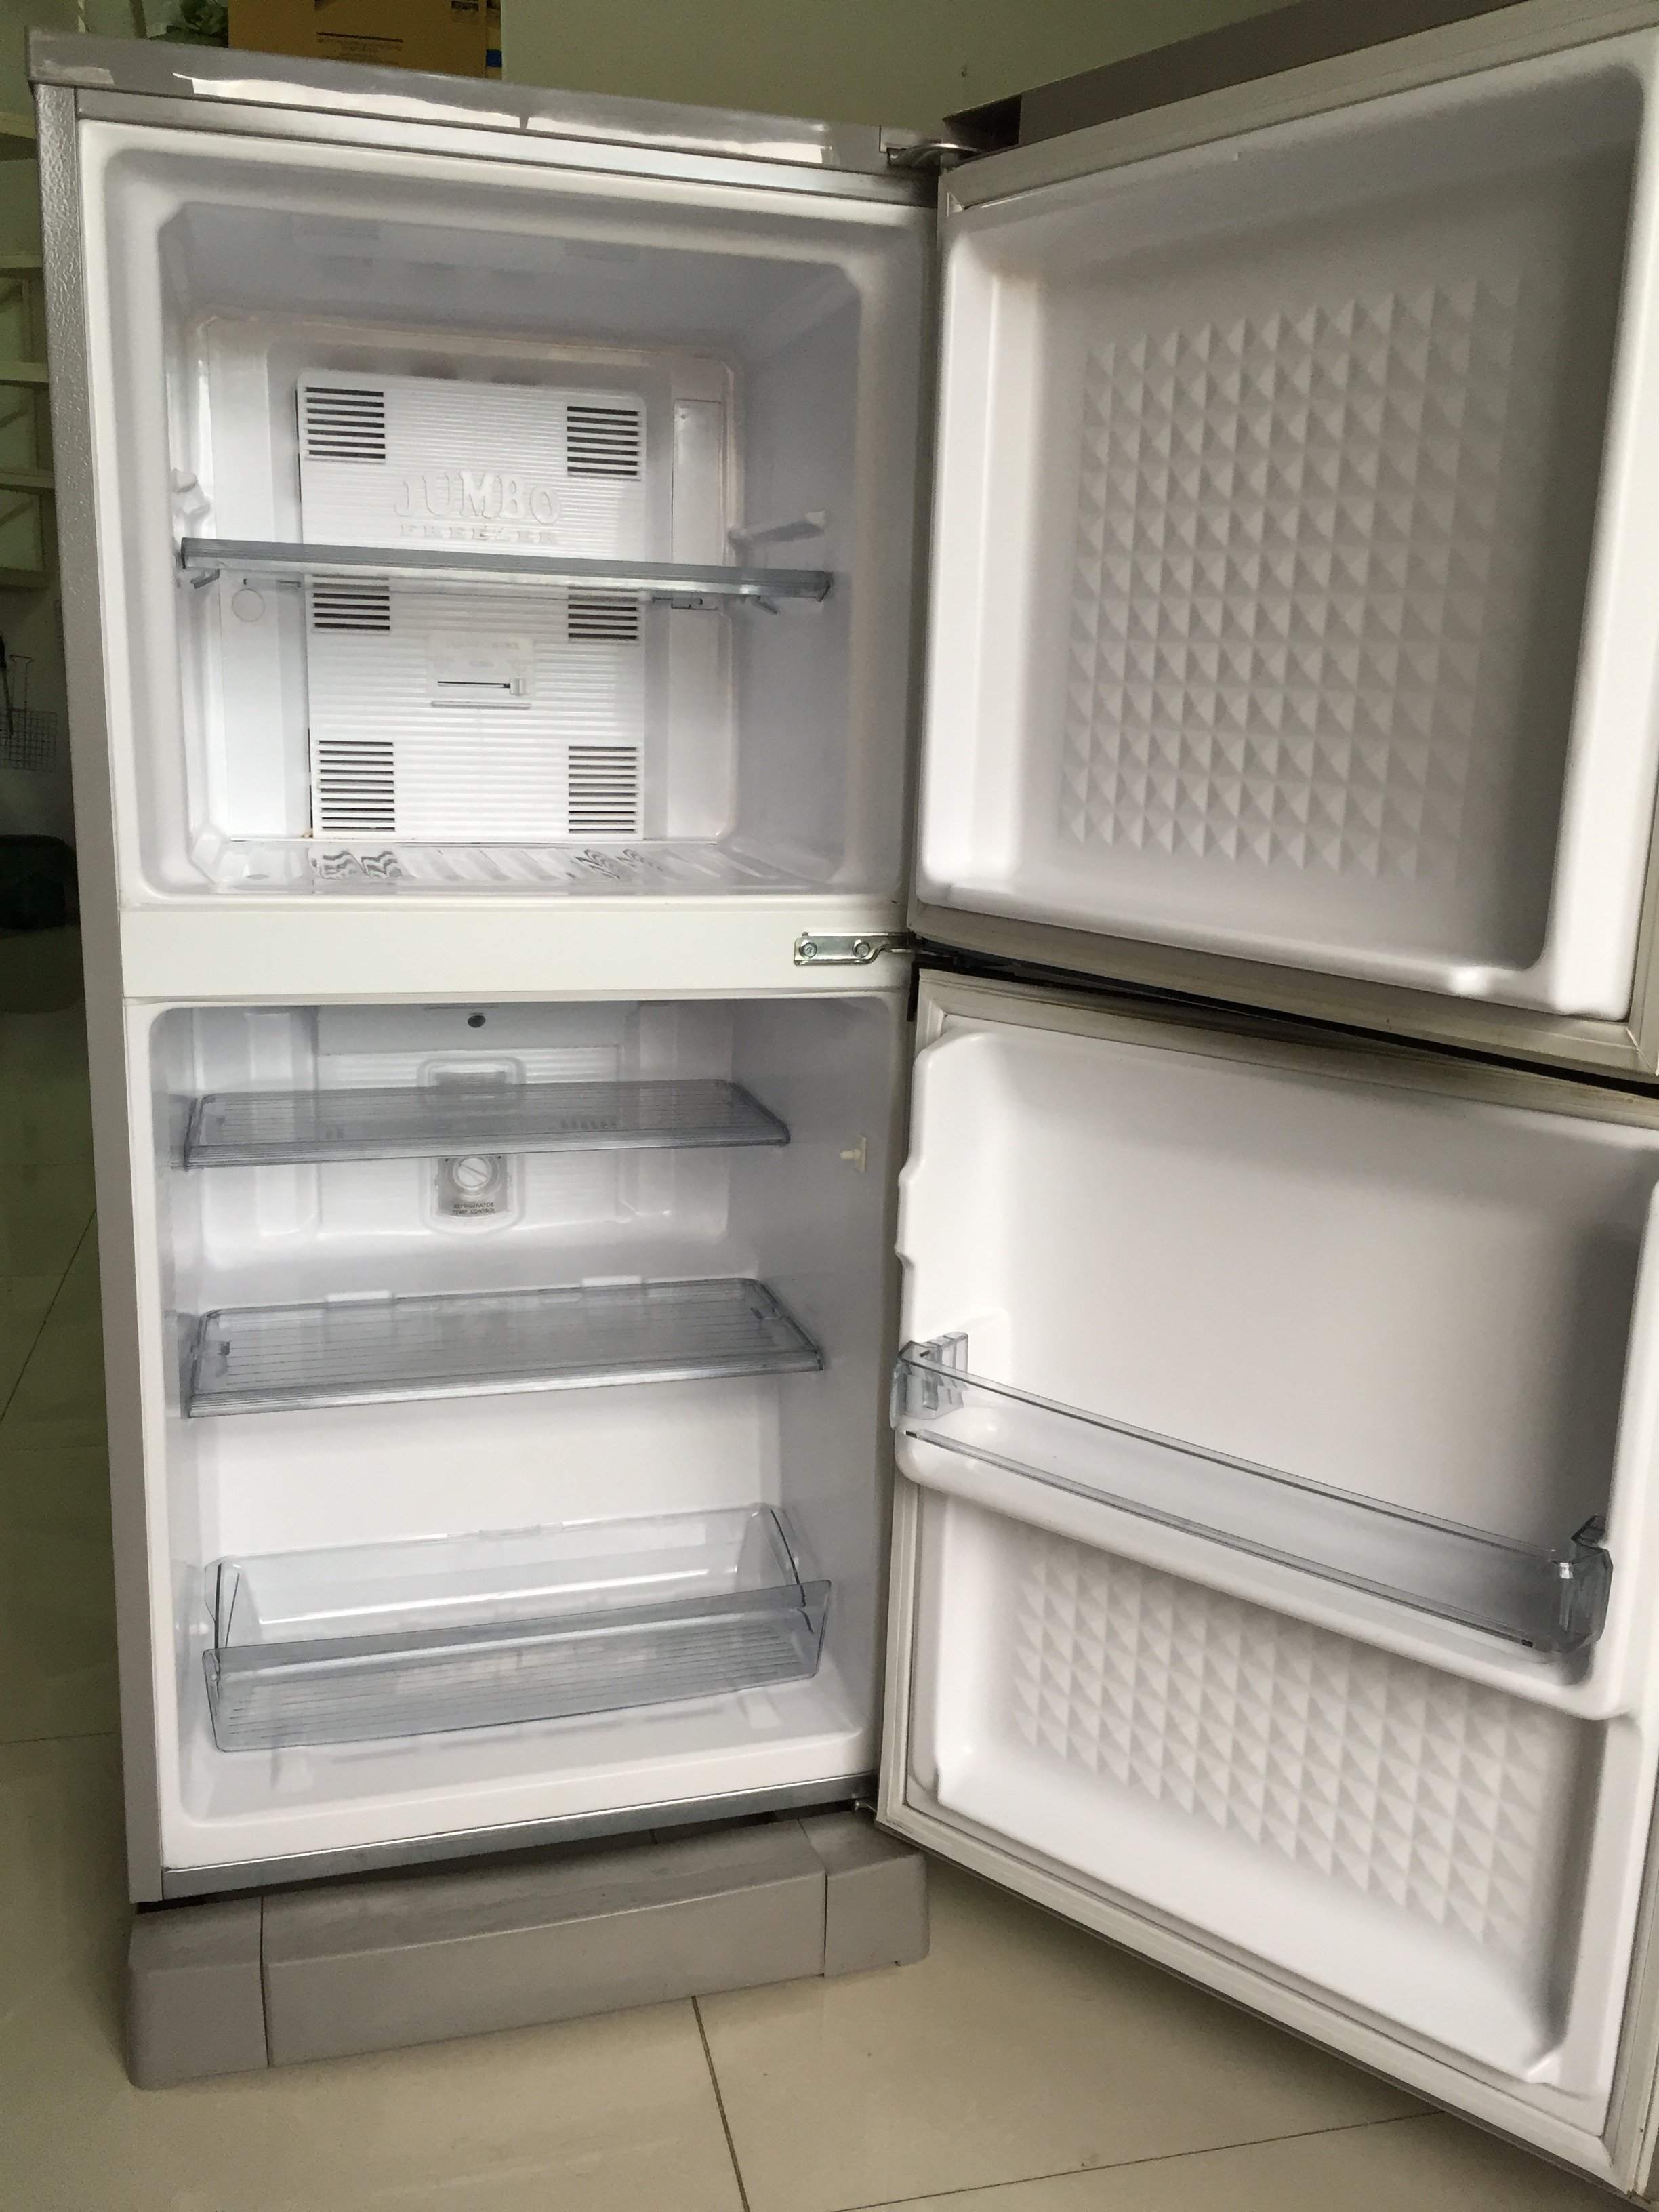 Tủ lạnh Panasonic 135l còn bảo hành giá rẻ - 2.600.000đ